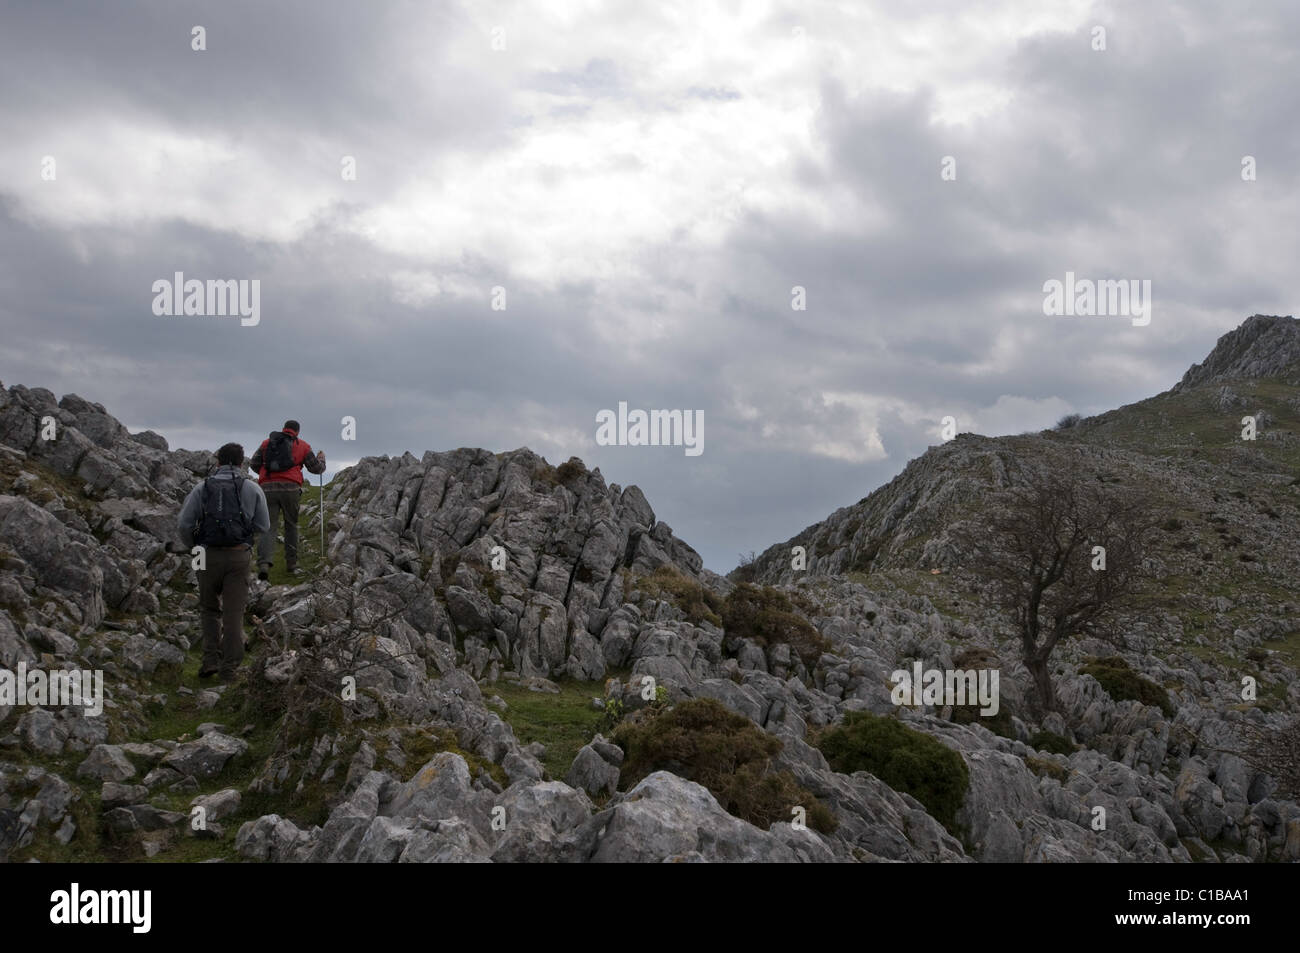 Vista panoramica di due maschi adulti escursionismo in una montagna rocciosa. Foto Stock